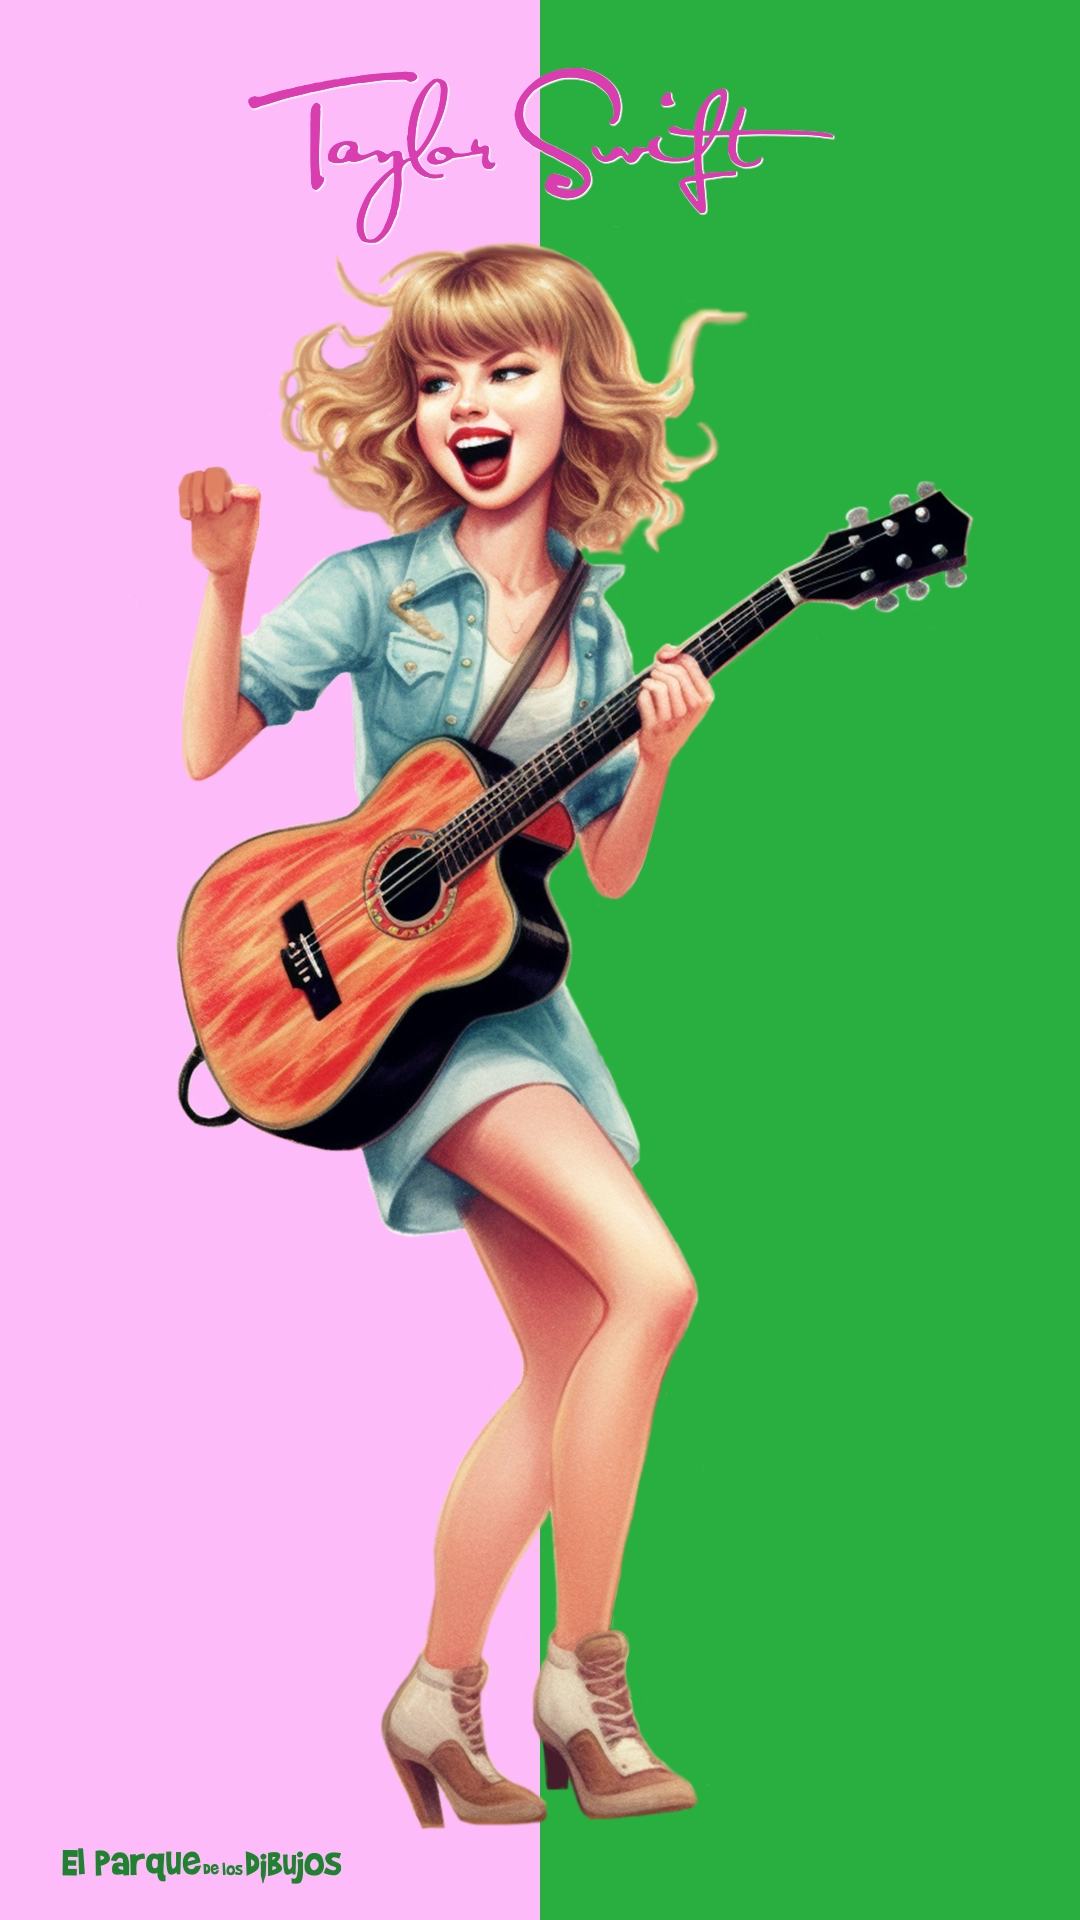 Ilustración en color de Taylor Swift en concierto para descargar e imprimir